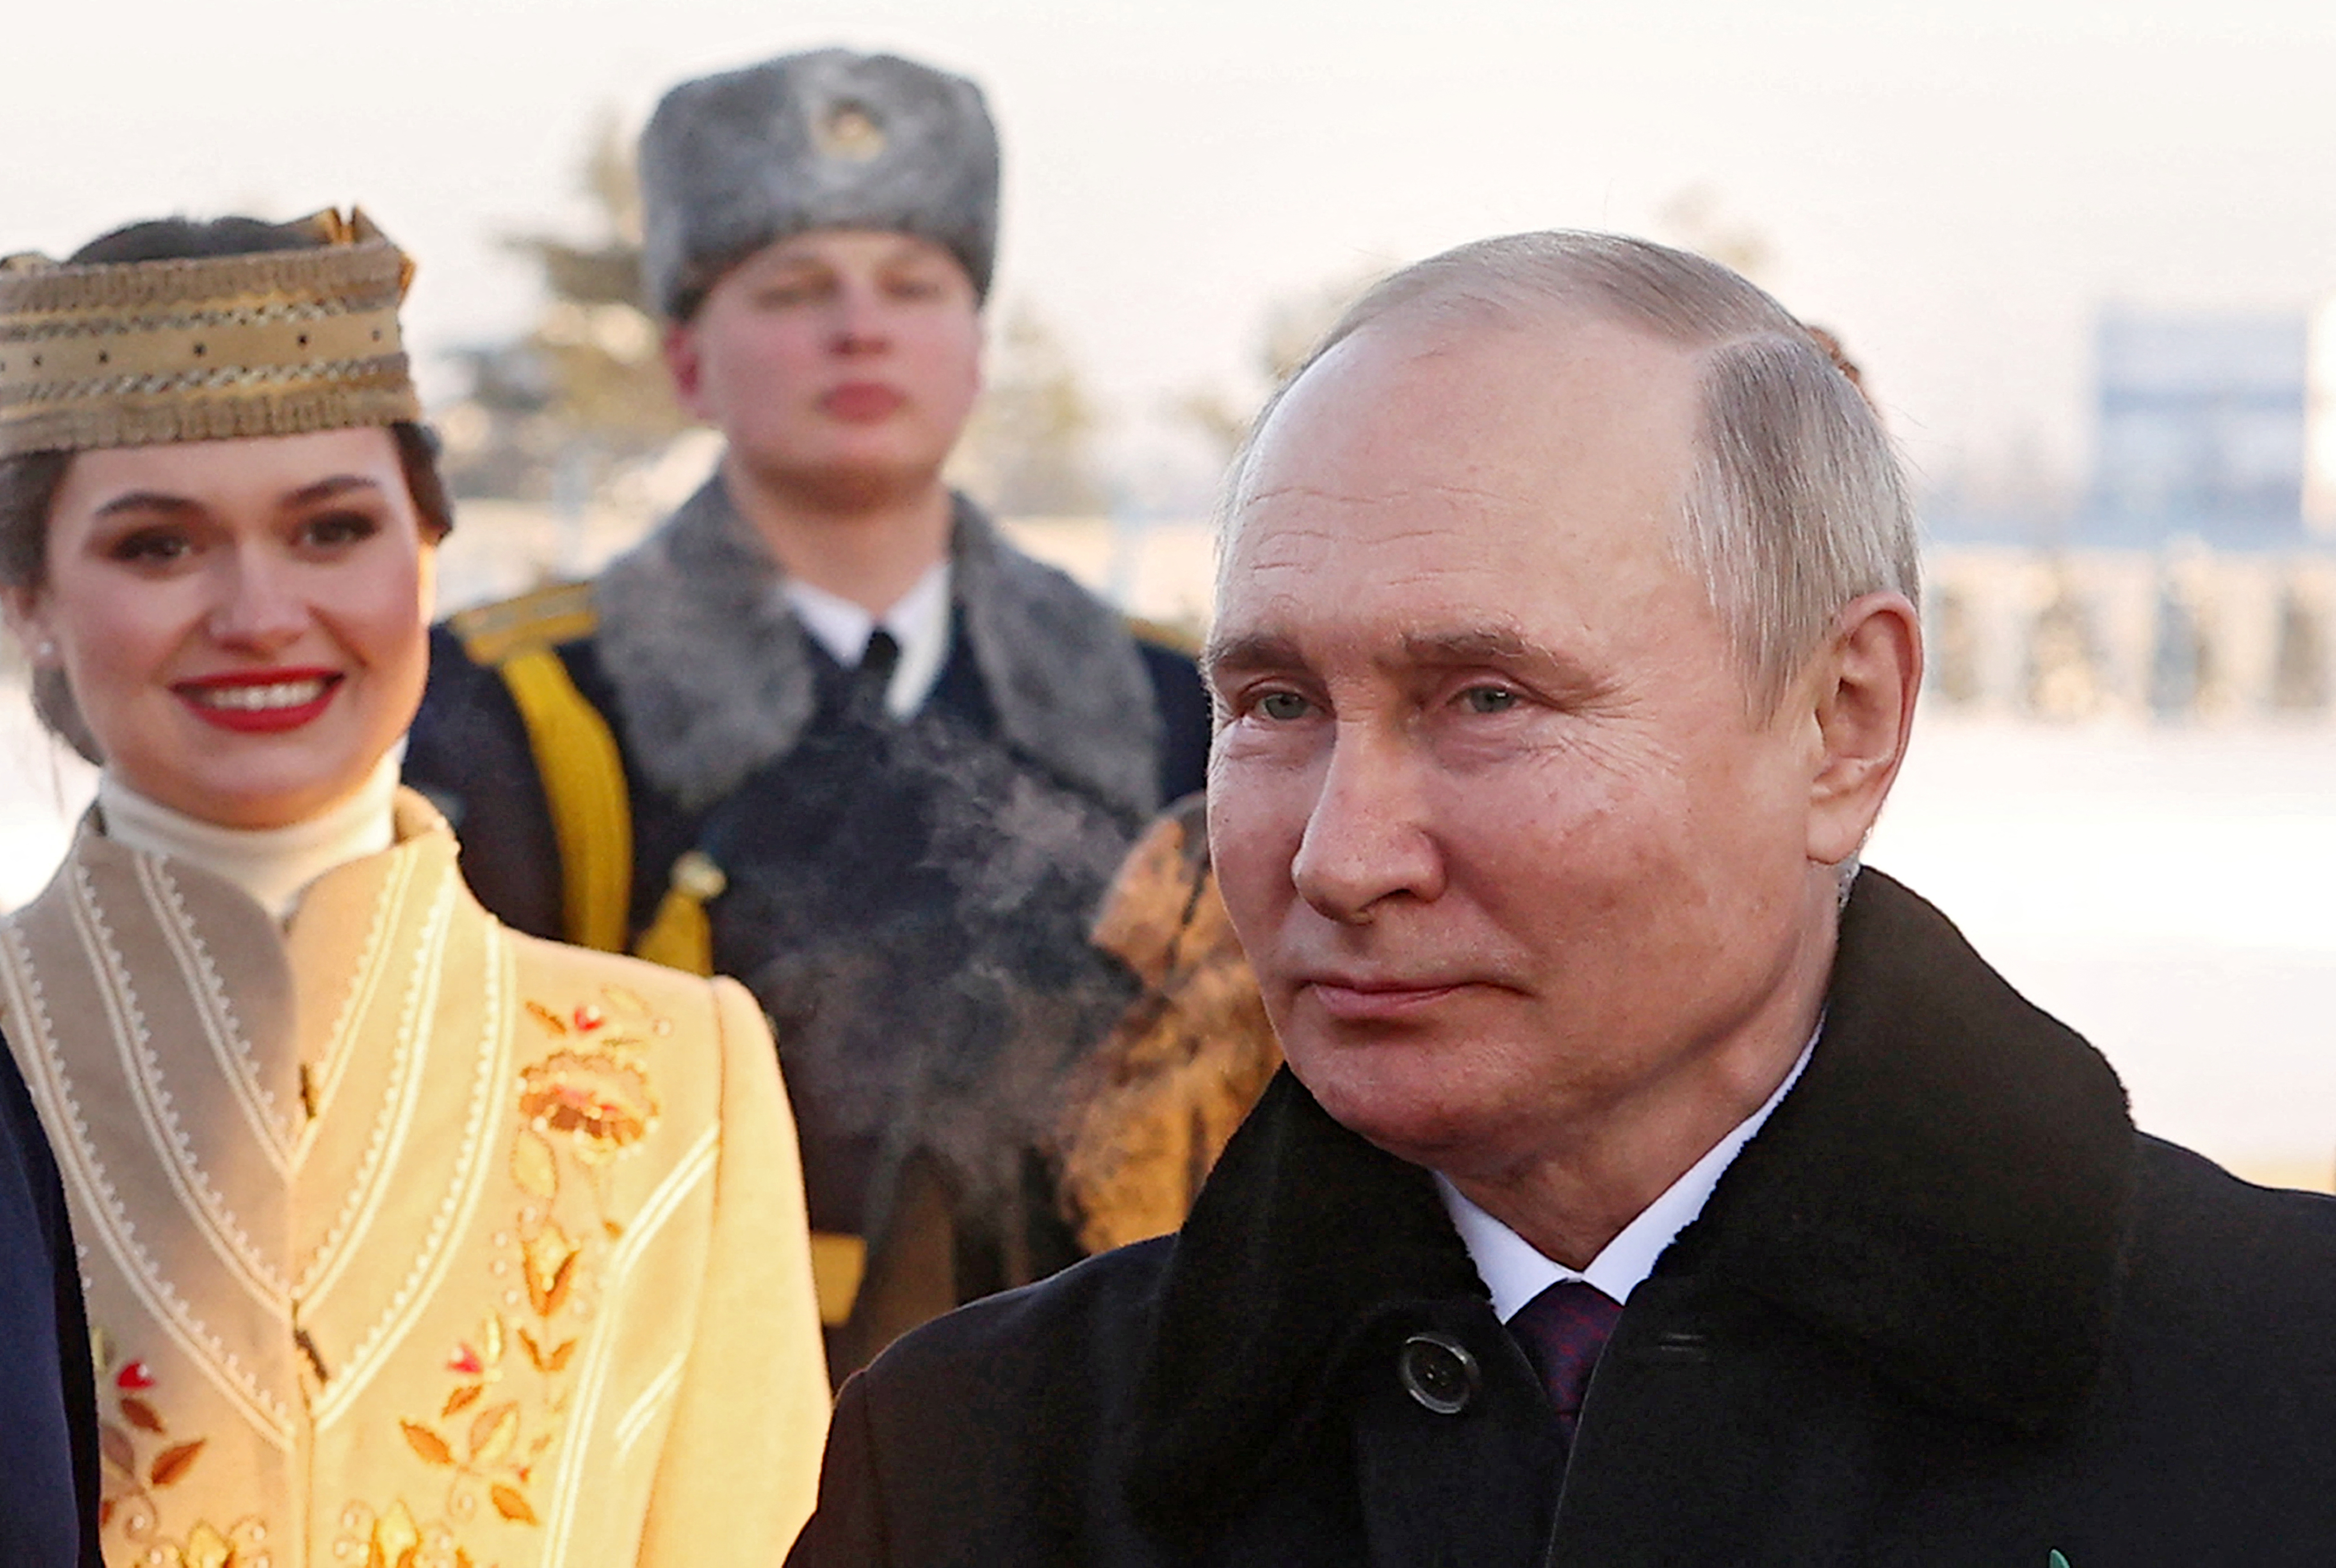 Russian President Vladimir Putin arrives in Minsk